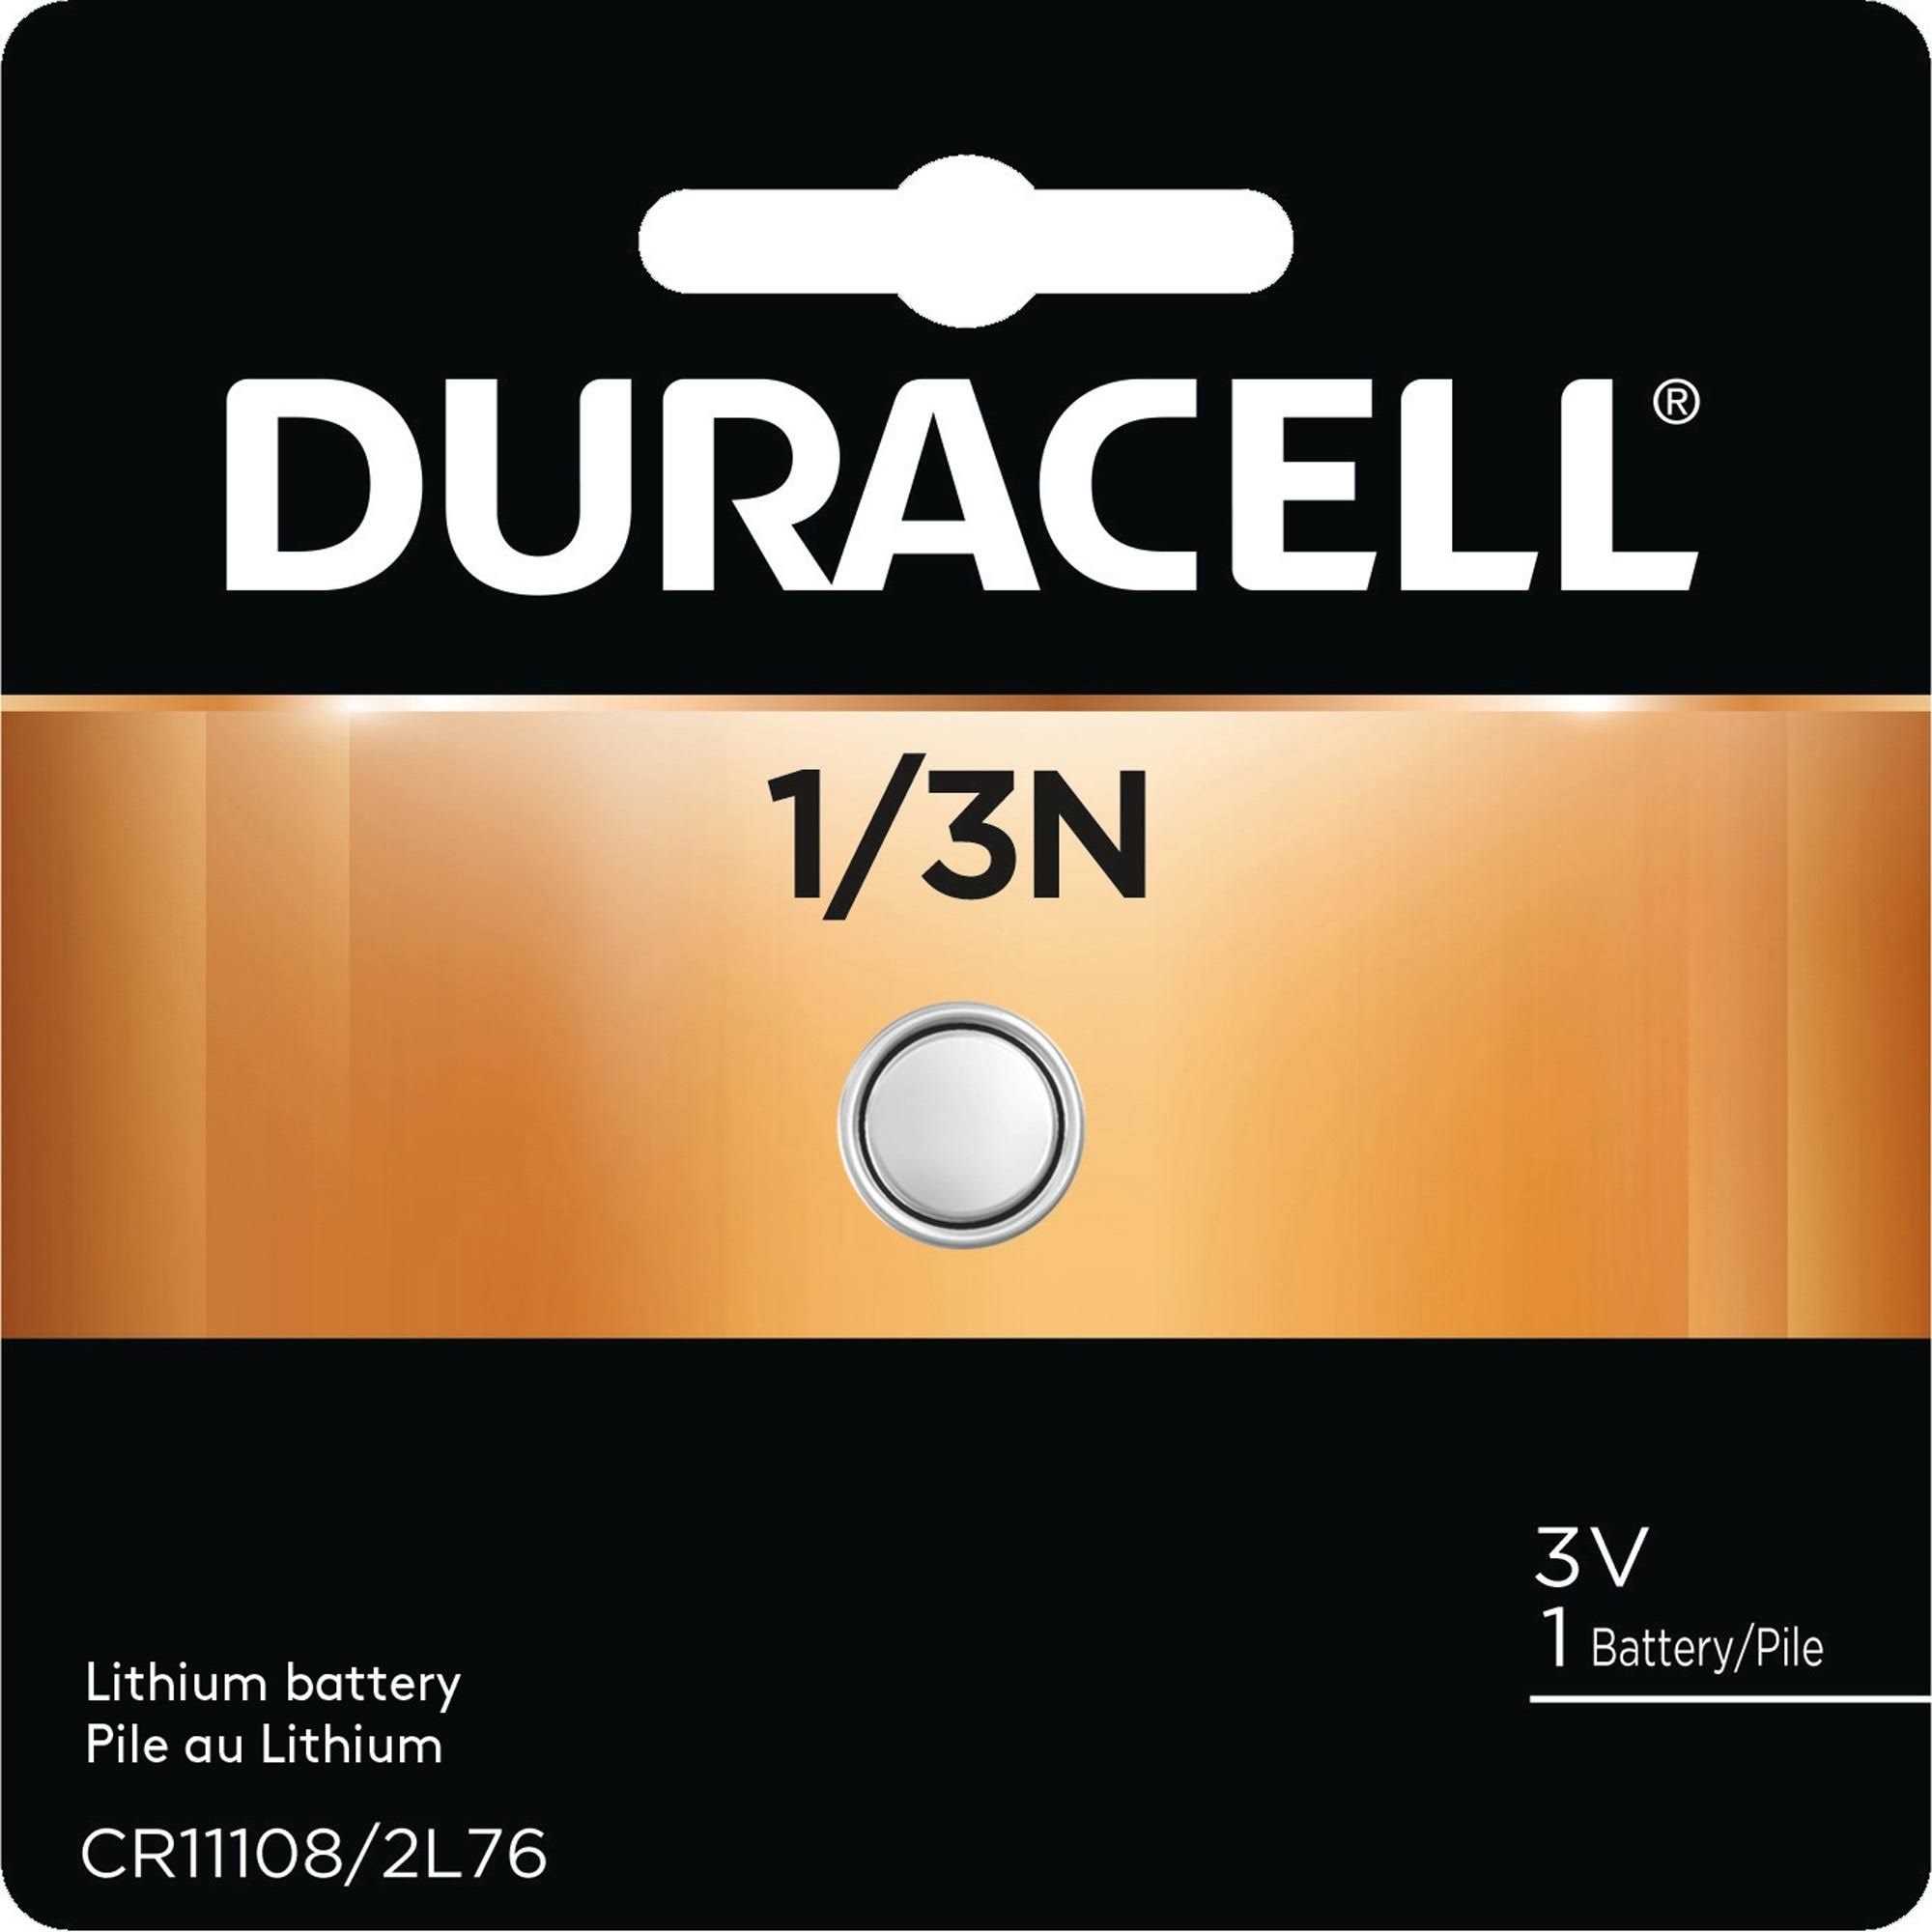 Duracell 1/3 N Battery - 3V